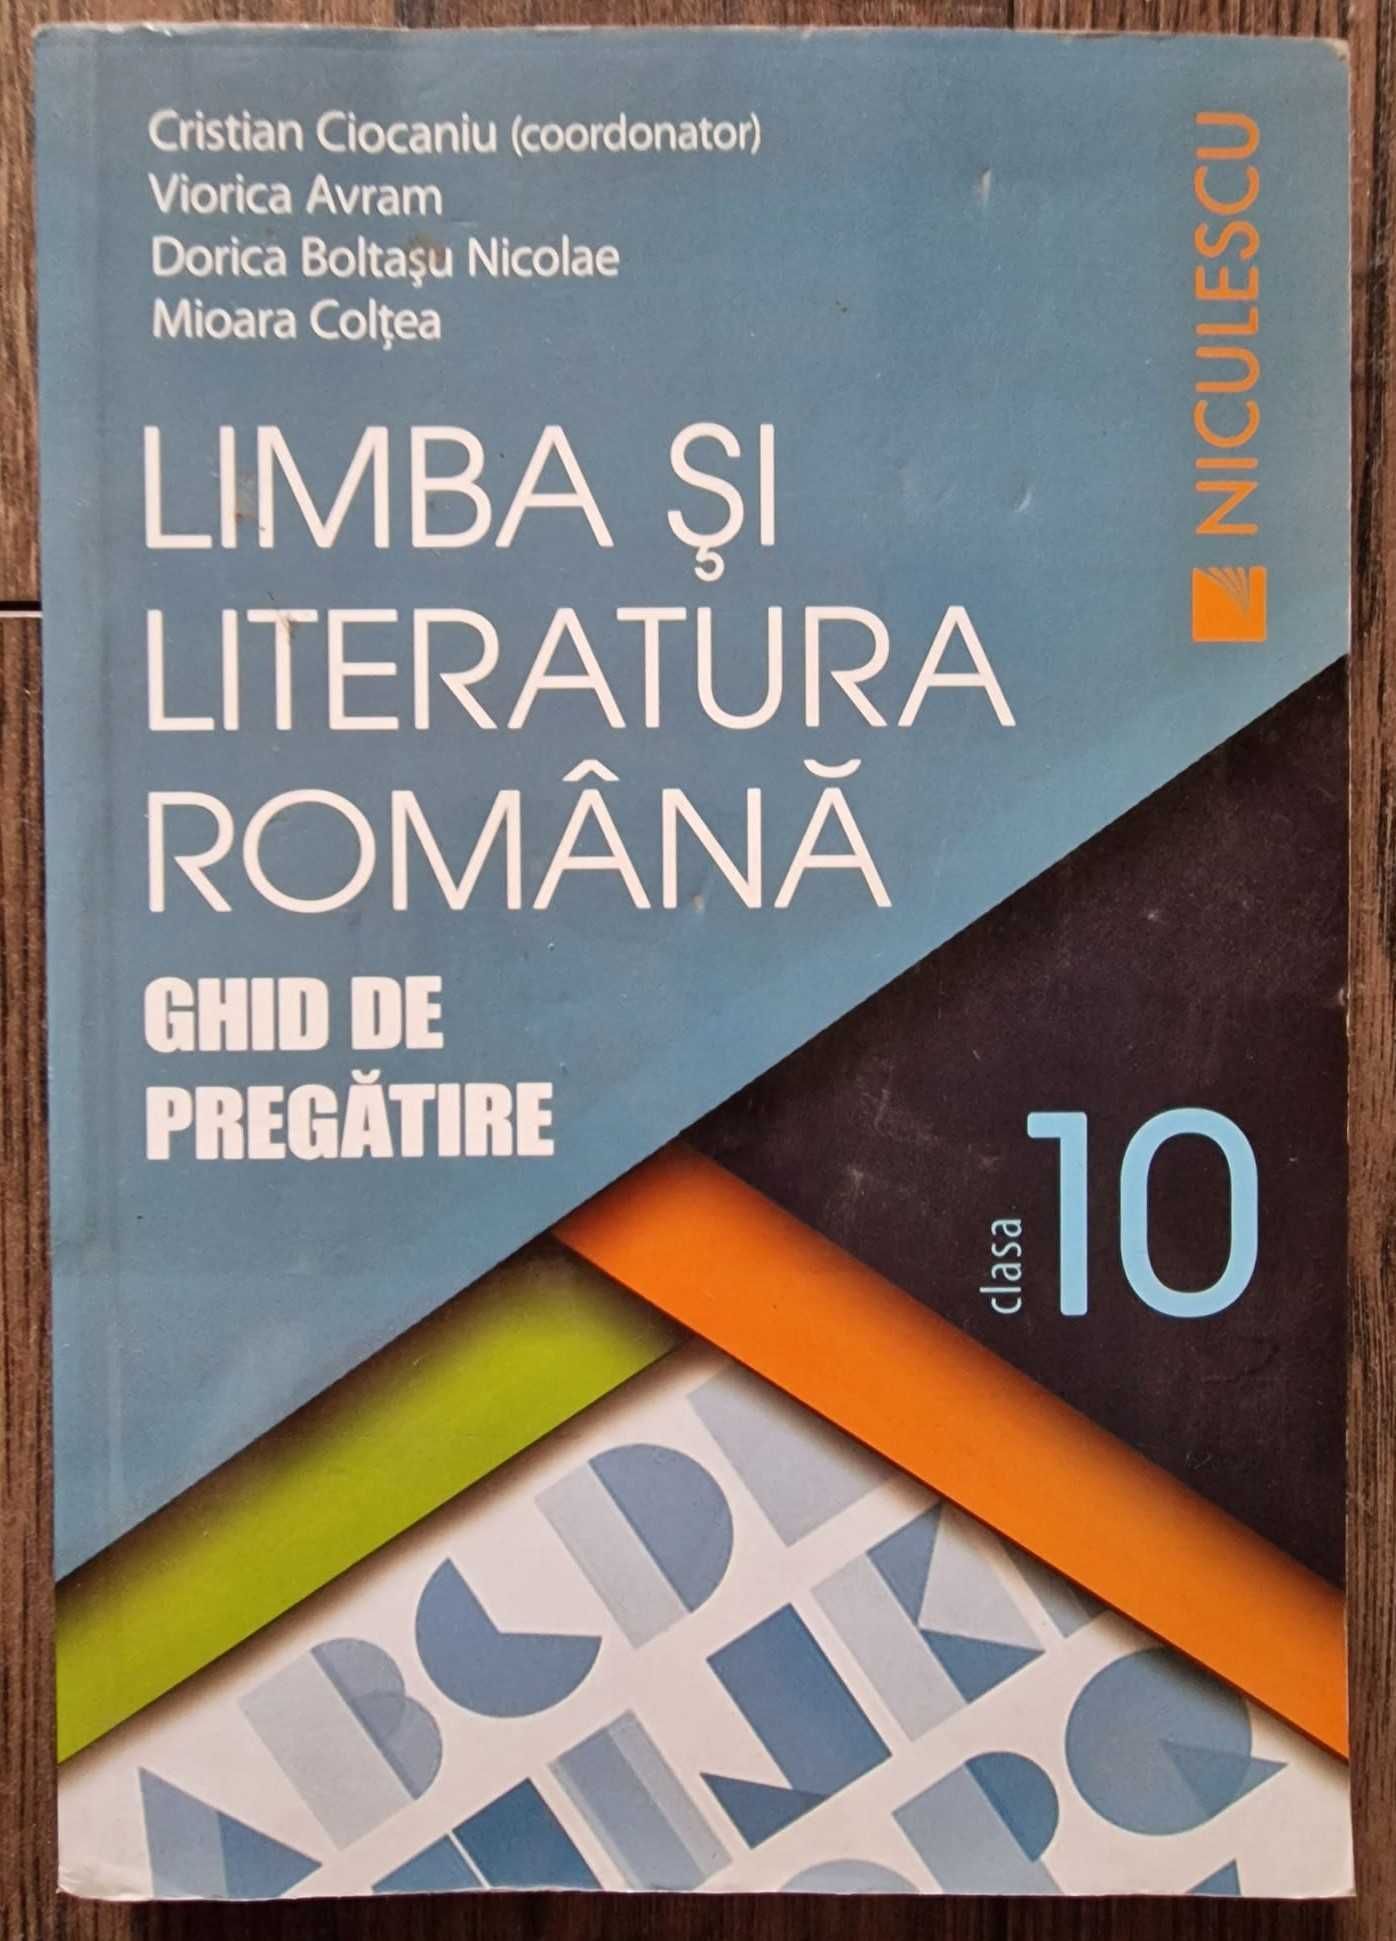 Ghid de pregătire “Limba și literatura romȃnă” clasa a 10-a